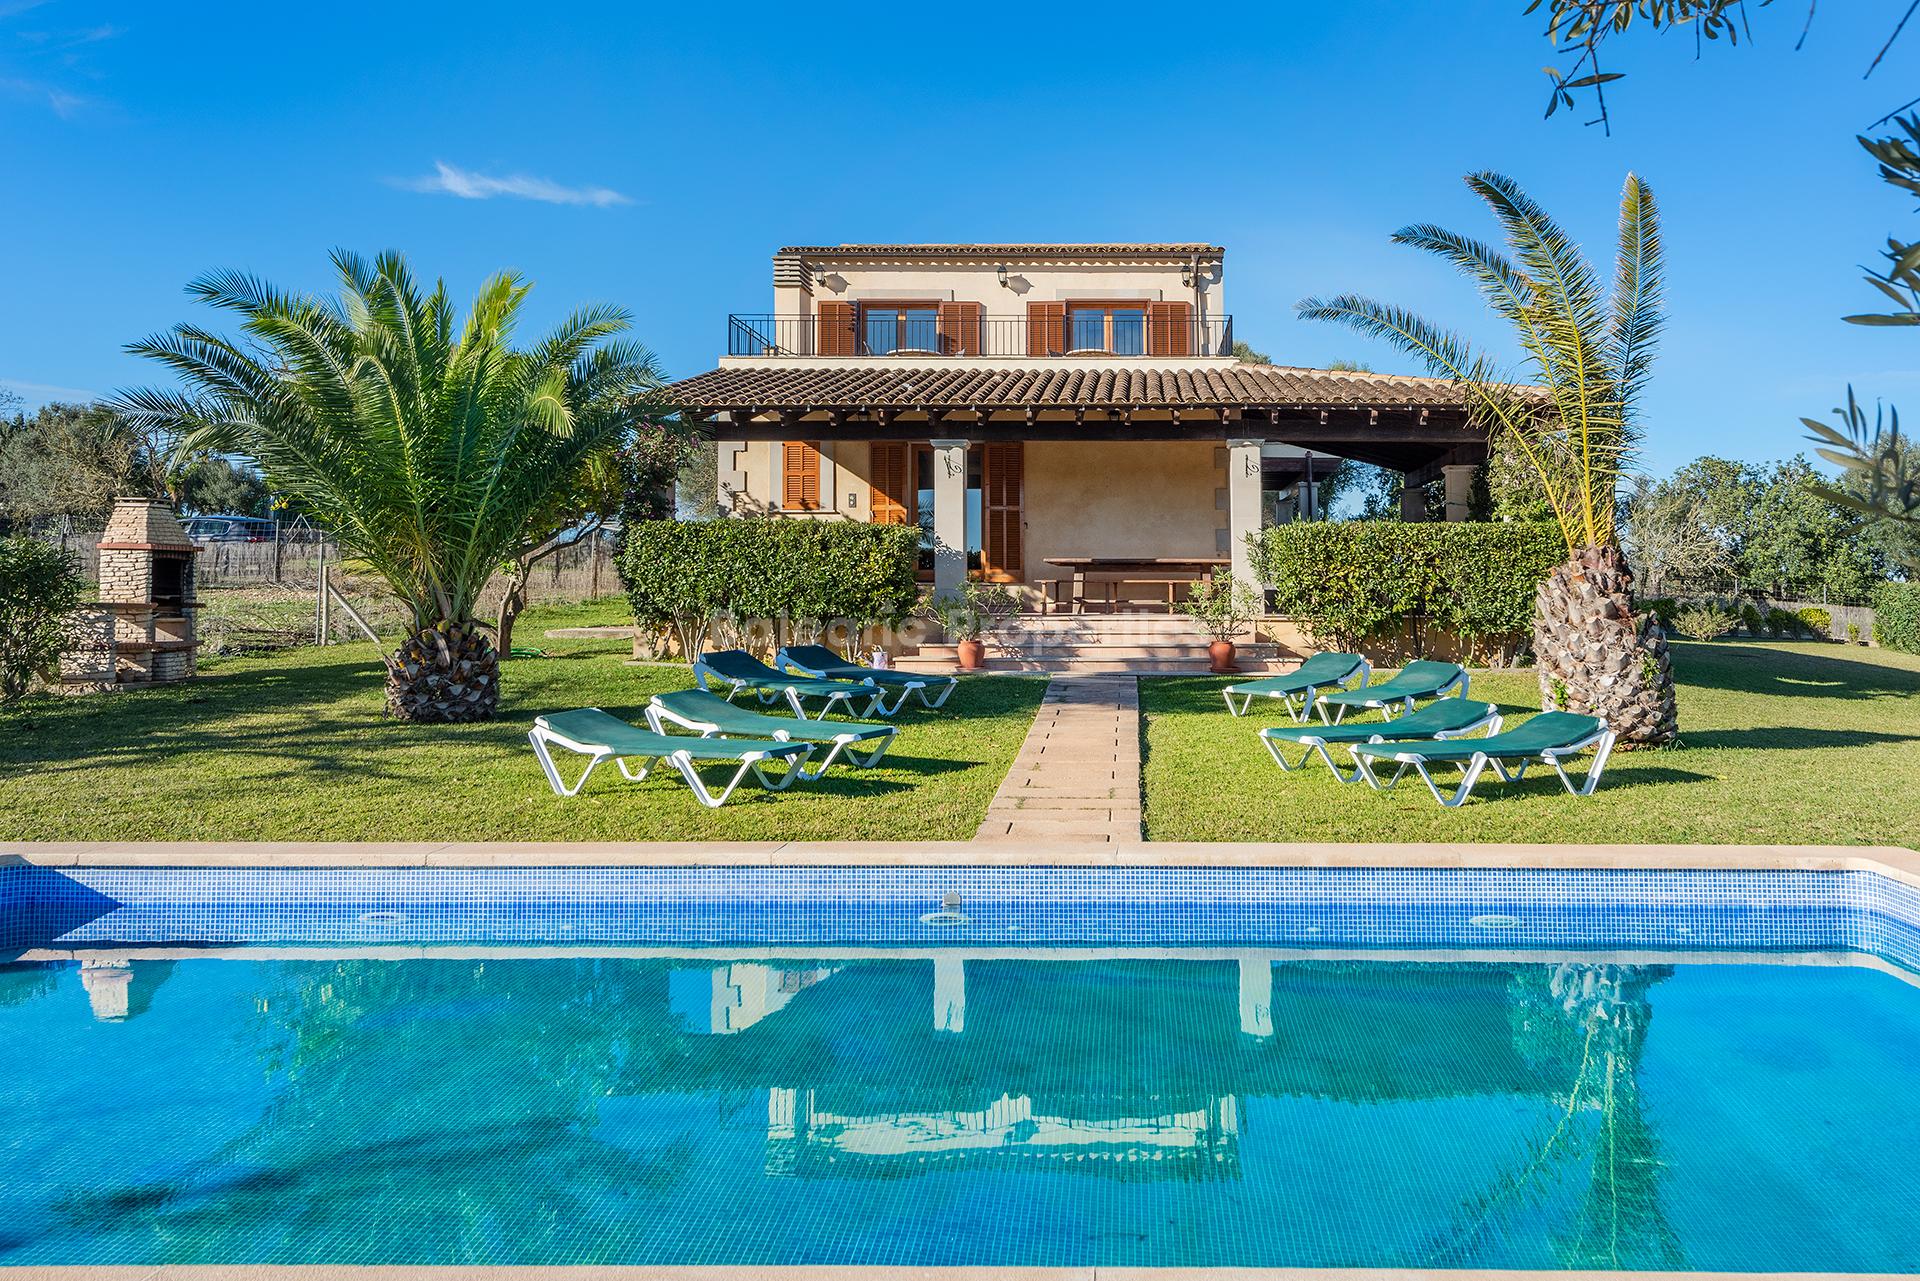 Villa de campo con licencia de vacaciones y piscina en venta en Santa Margalida, Mallorca